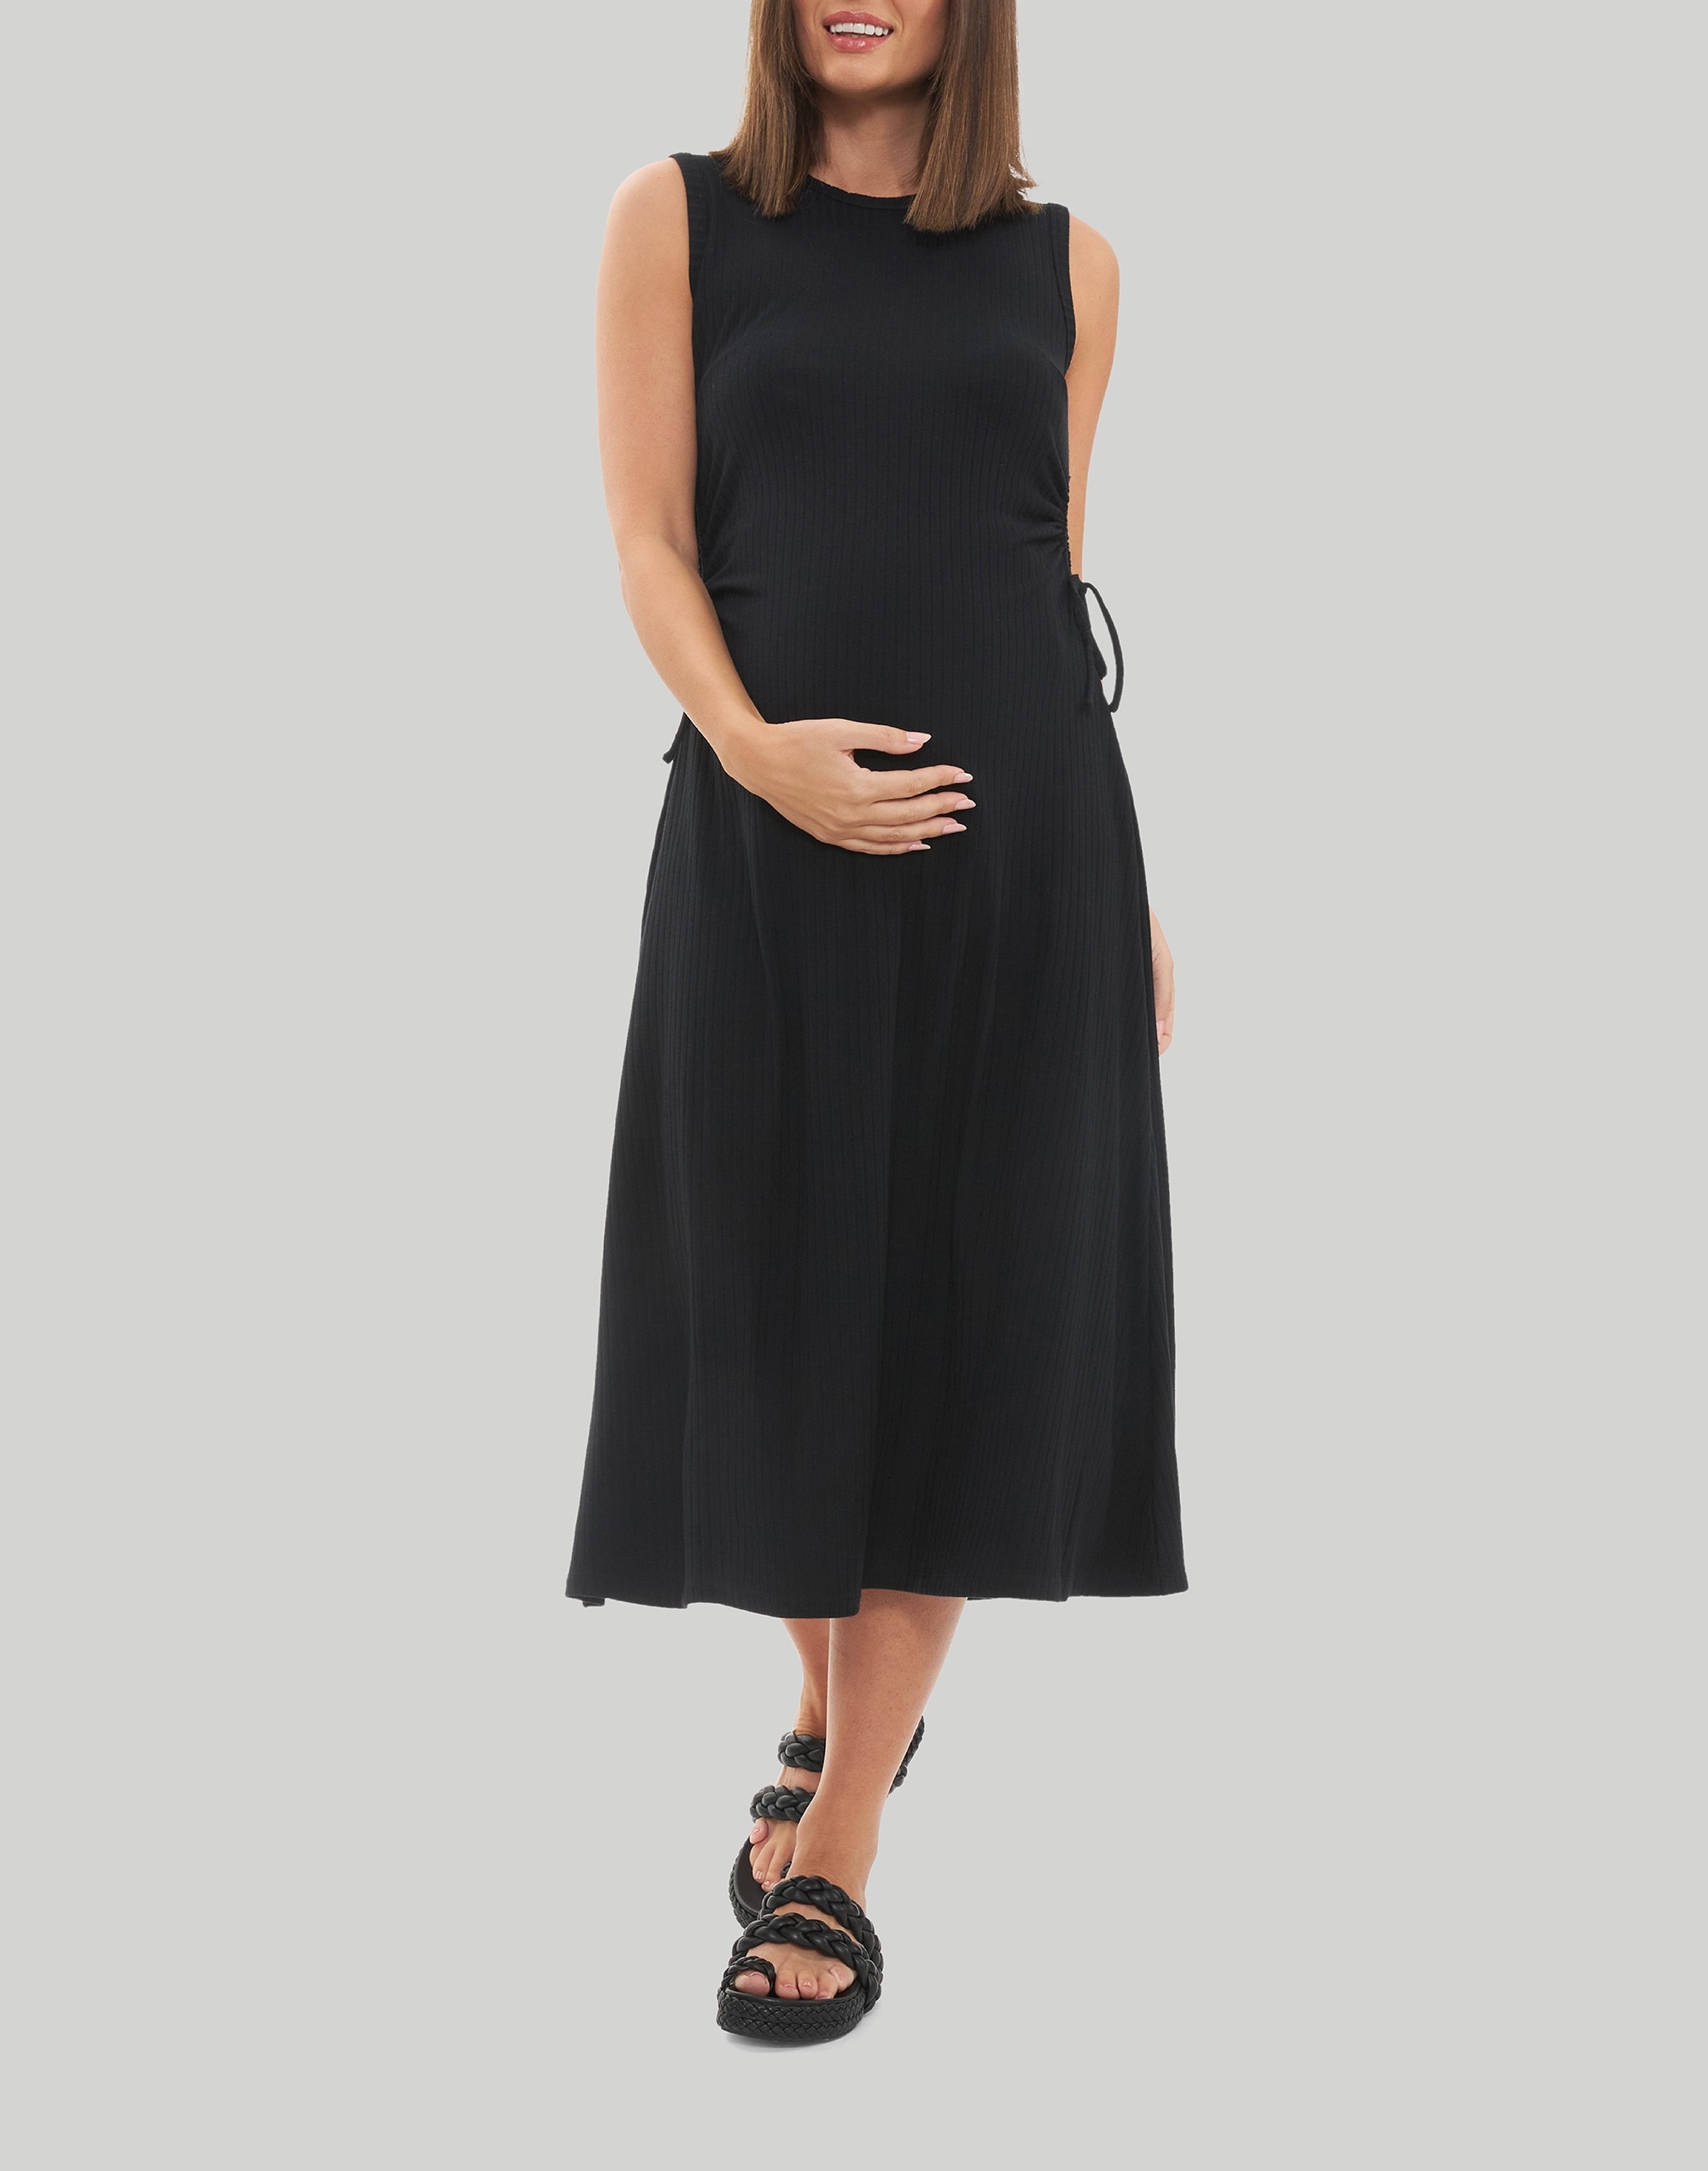 Ripe Maternity Carol Rib A-line Dress